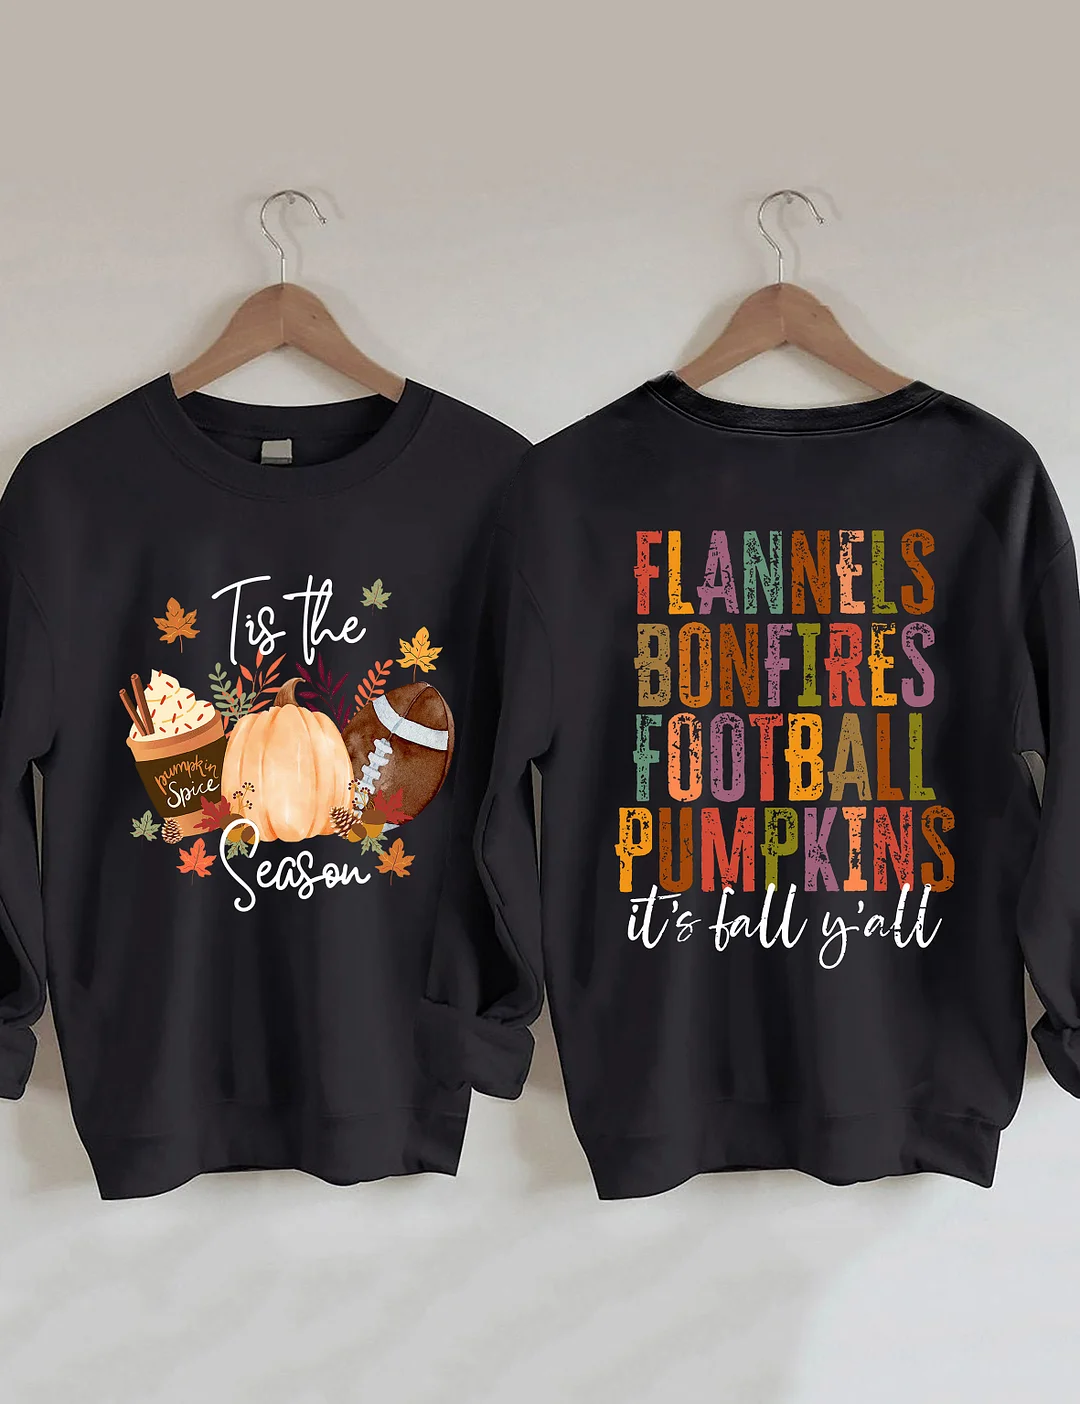 Flannels Bonfires Football Pumpkins Sweatshirt